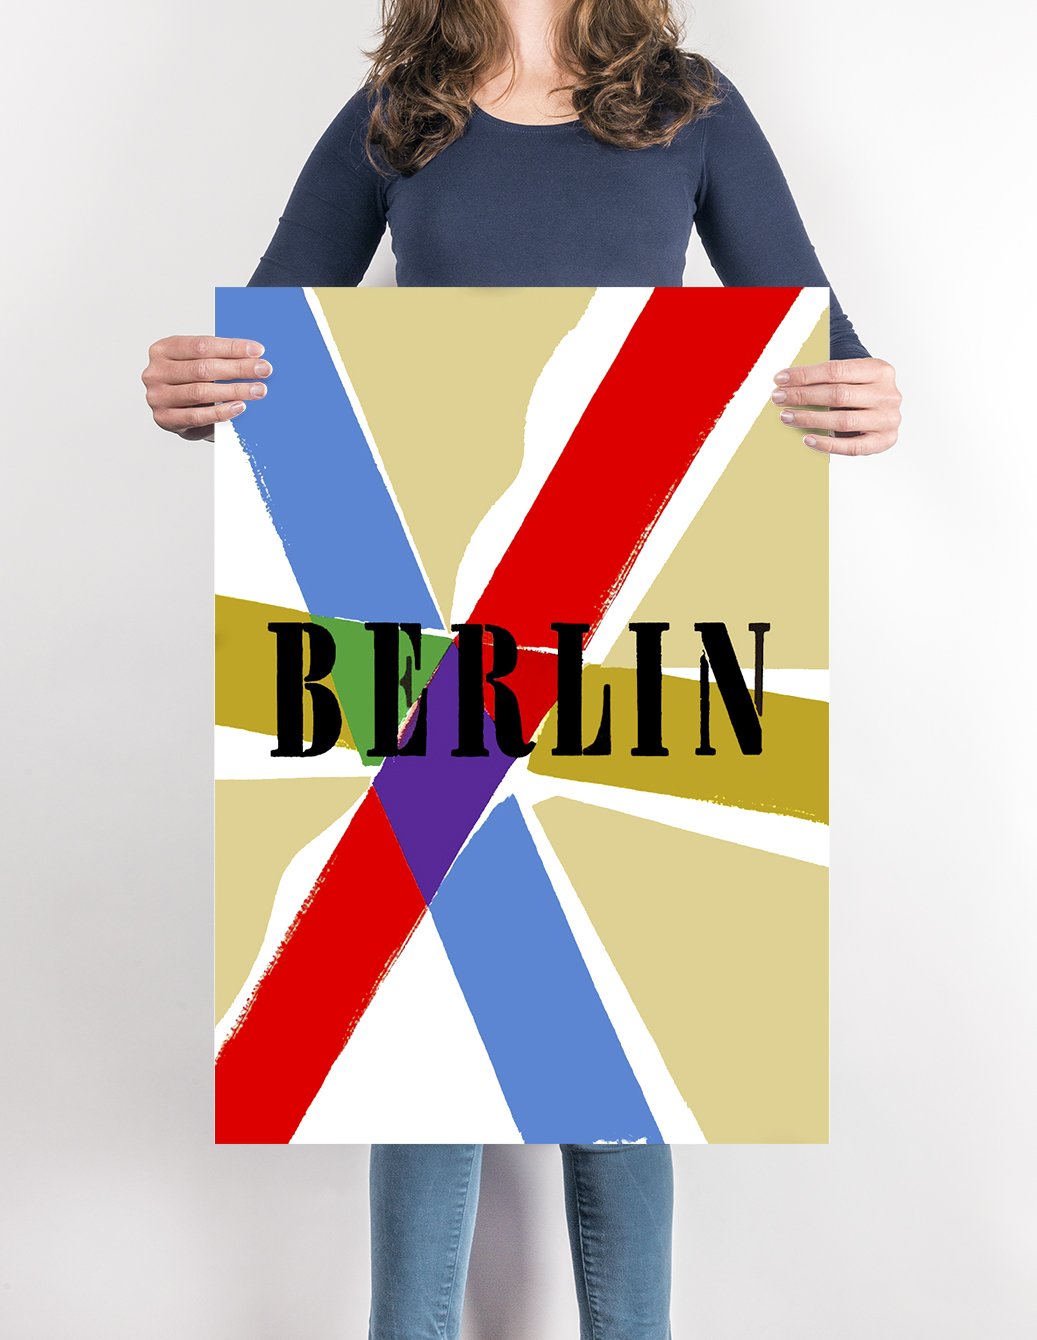 Berlin by Richard Blank 1952